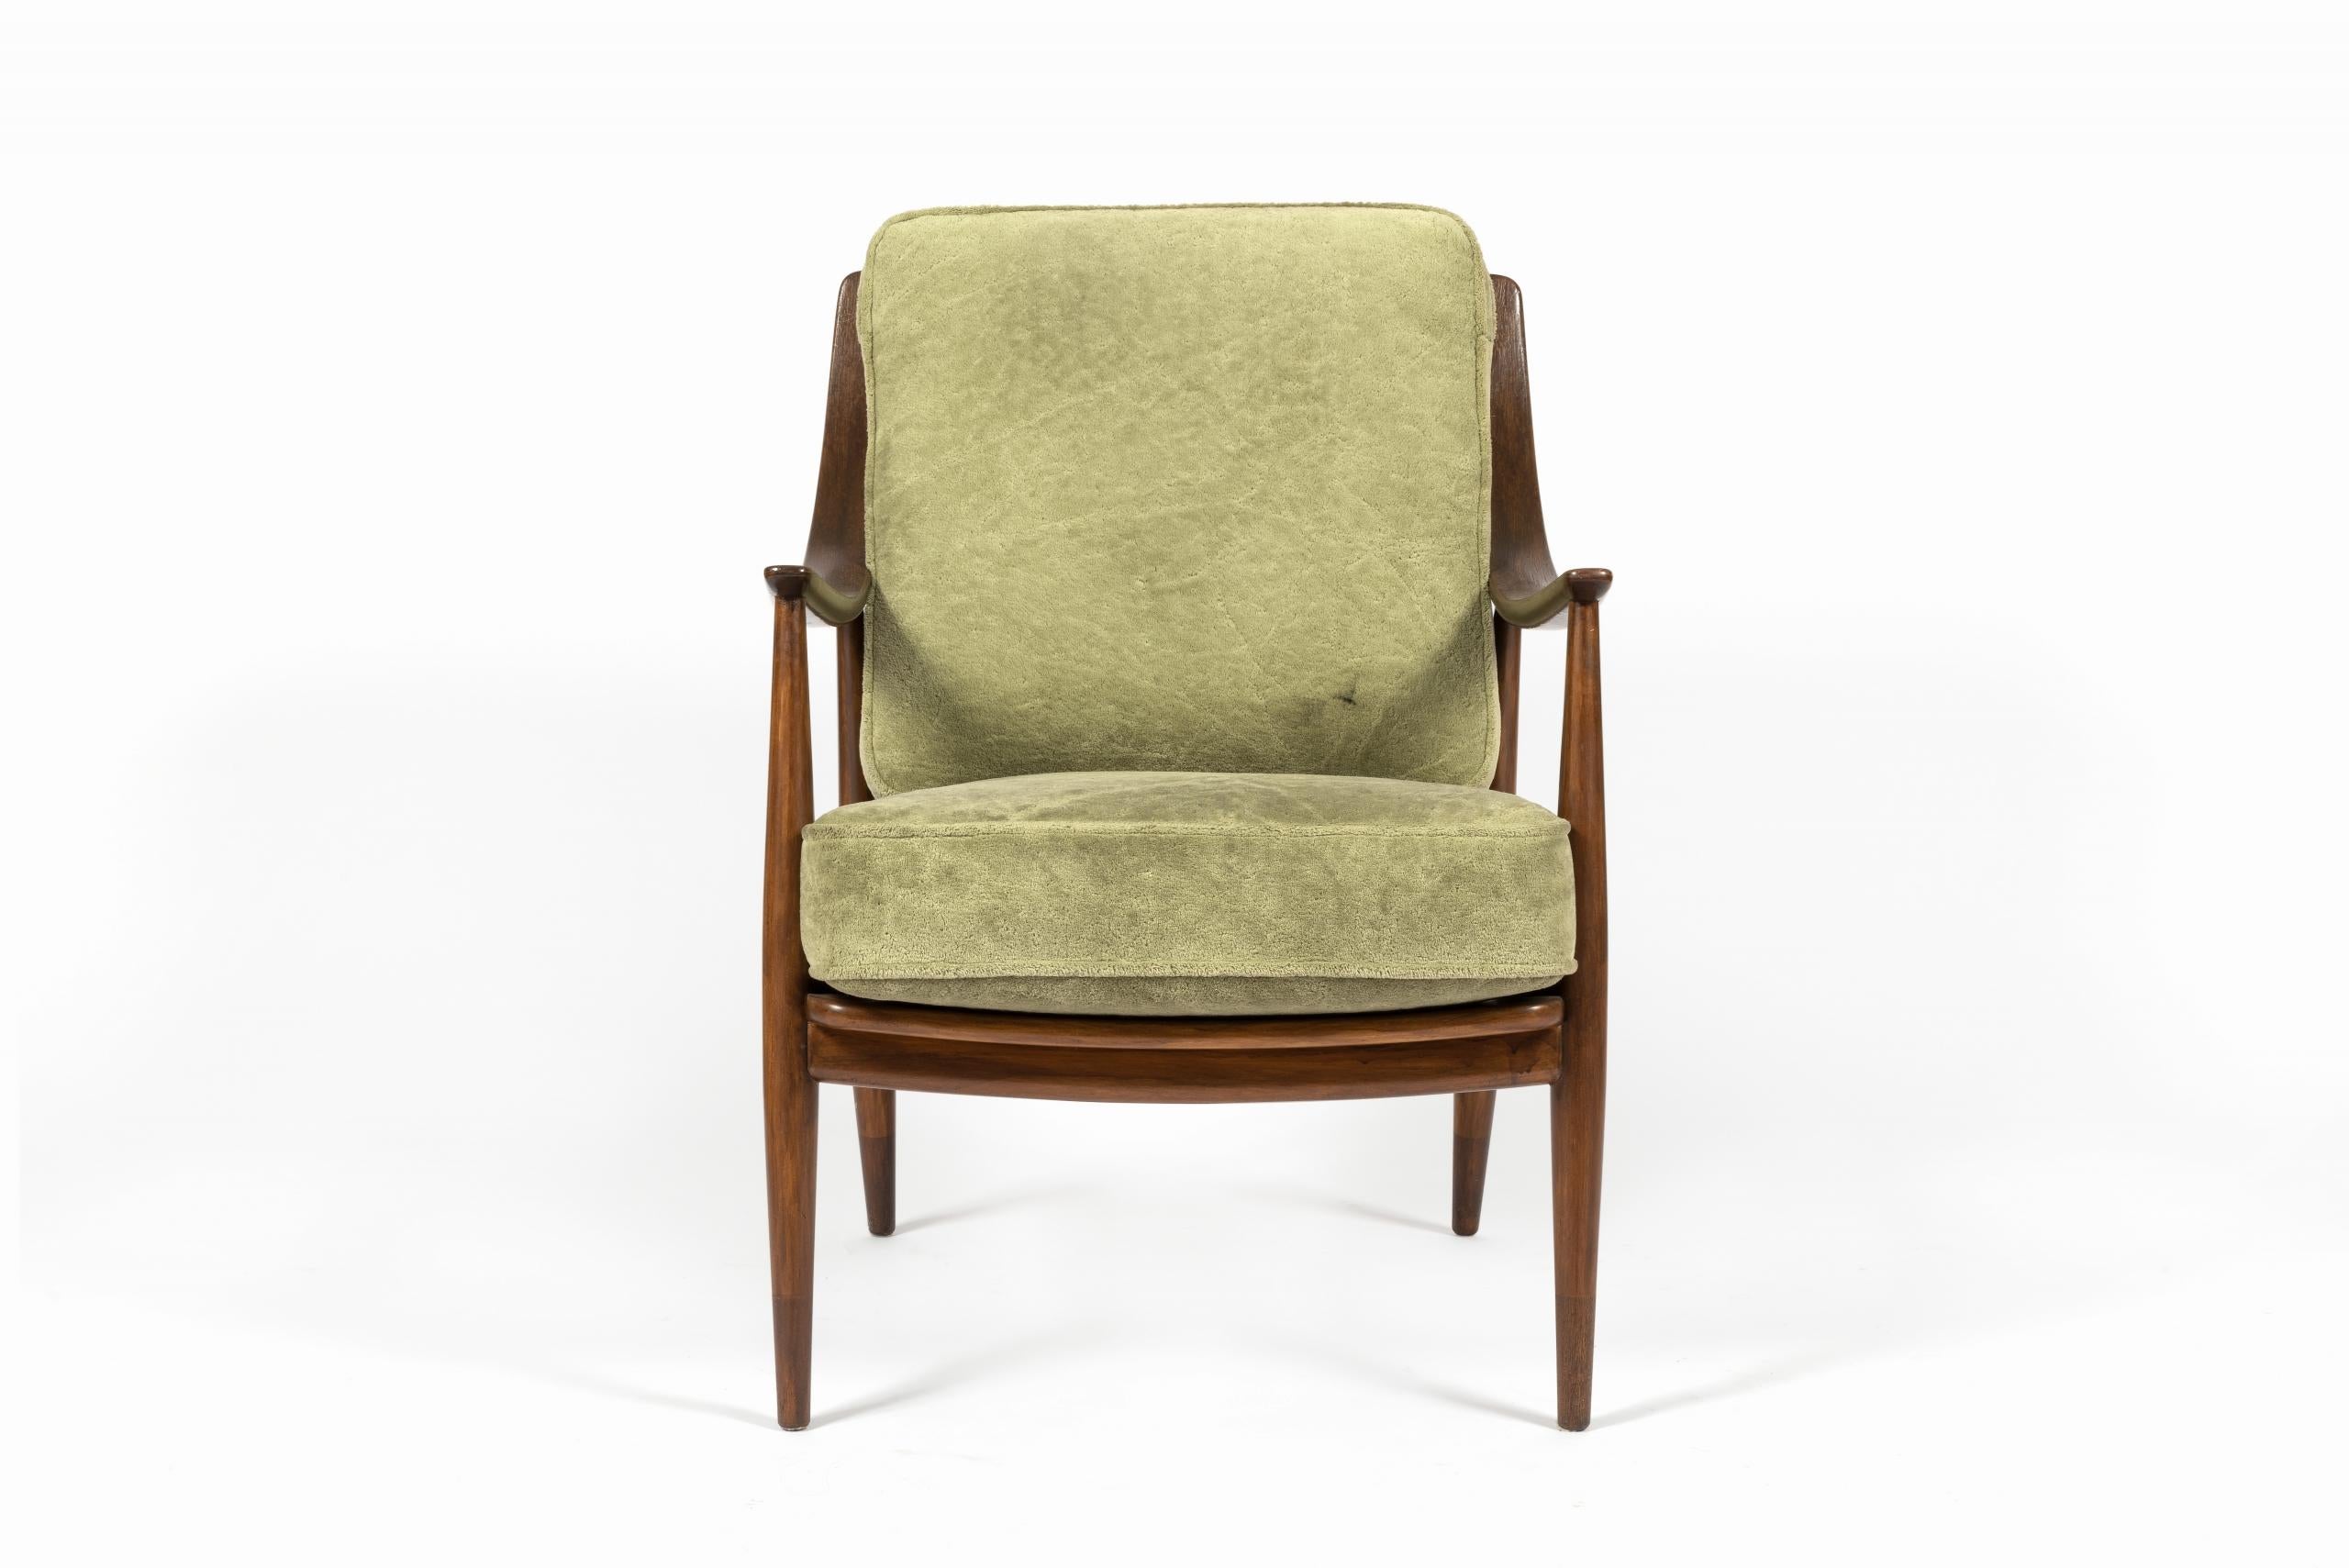 Fauteuil en teck, design de Peter Hvidt et Orla Mølgaard-Nielsen pour France & Daverkosen, années 1950.

Accoudoirs en bois courbé avec assise et dossier velours couleur vert.

Dimensions : H83×L64×P76cm.